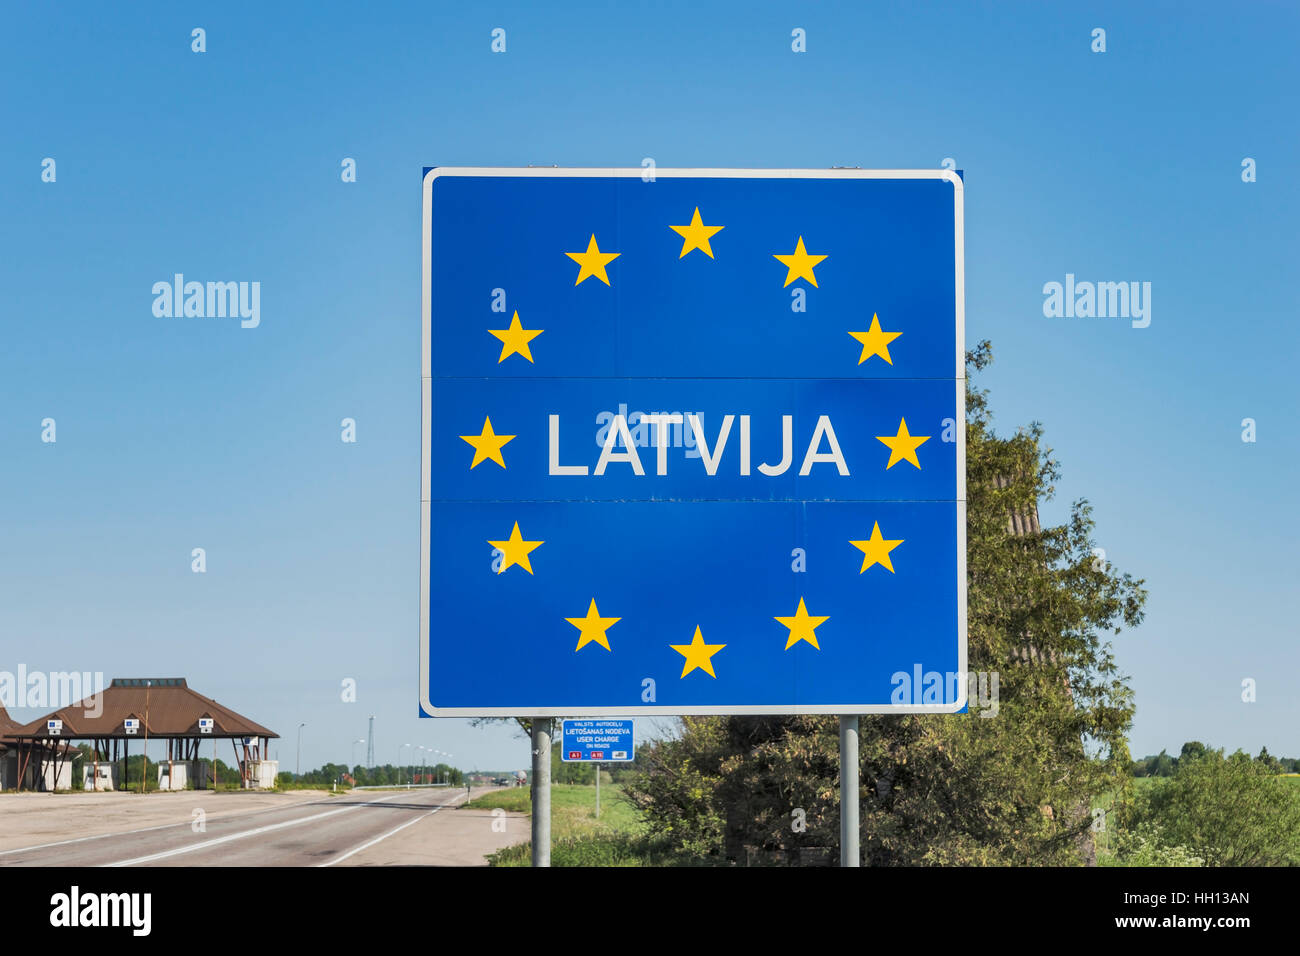 L'Etat balte à la frontière de la Lettonie (Latvija), l'Union européenne, États baltes, Europe Banque D'Images